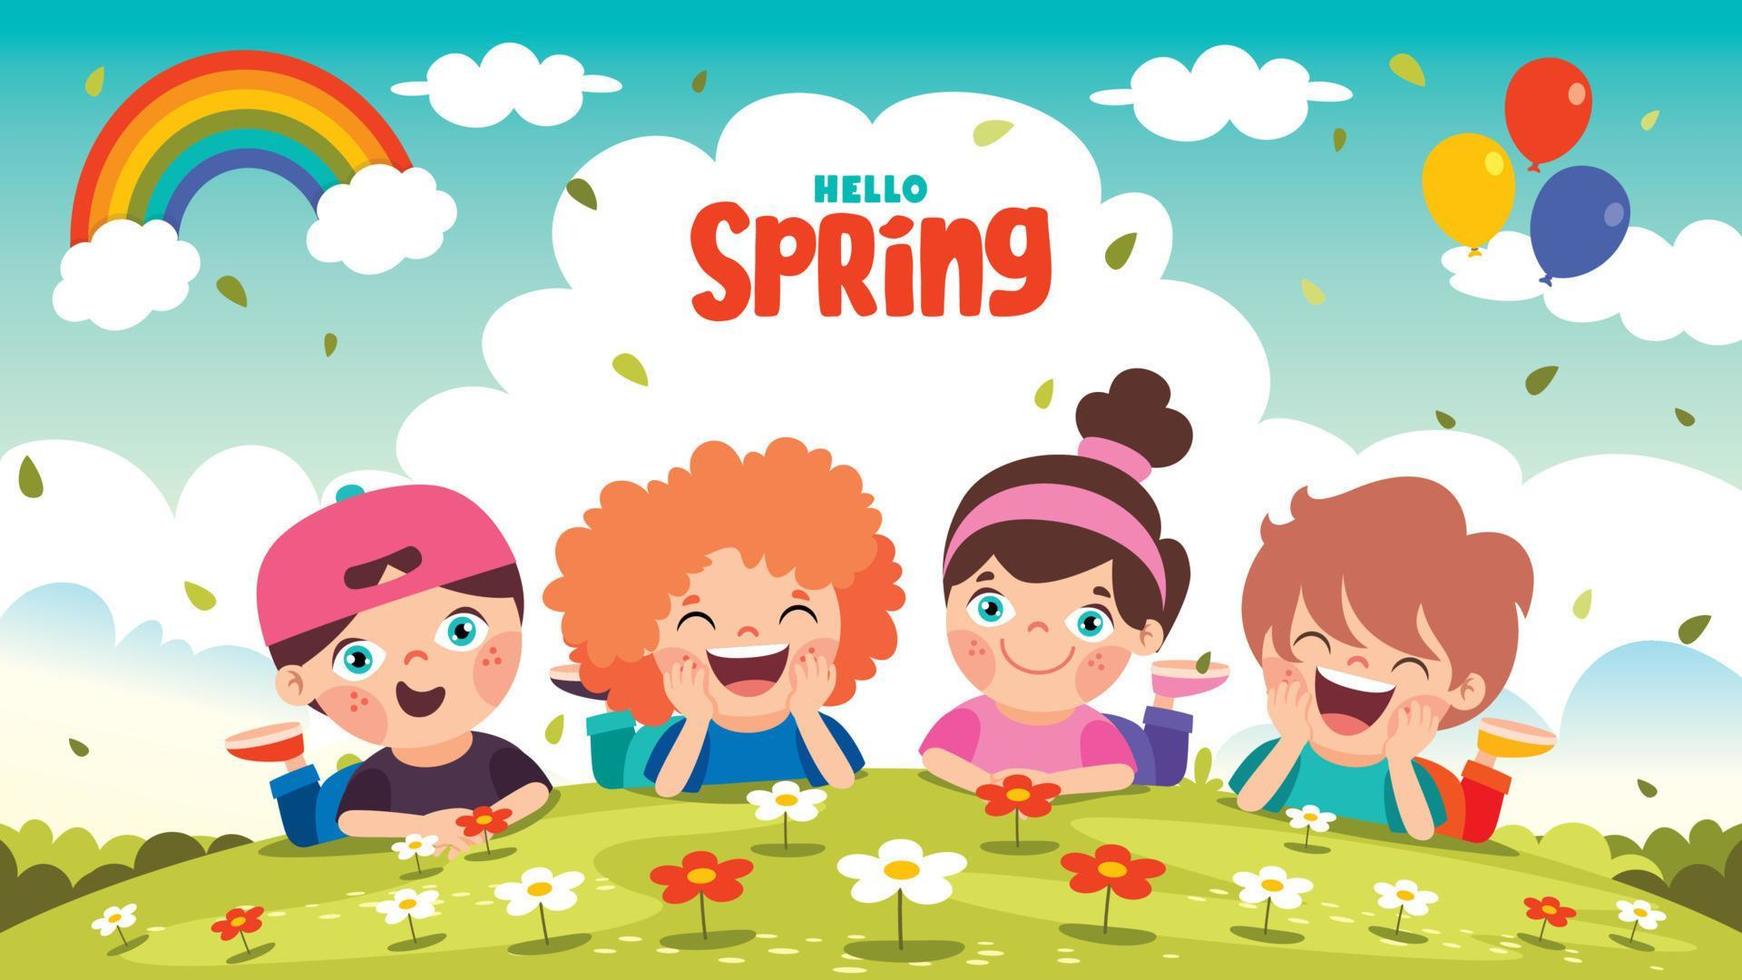 temporada de primavera com crianças de desenhos animados vetor